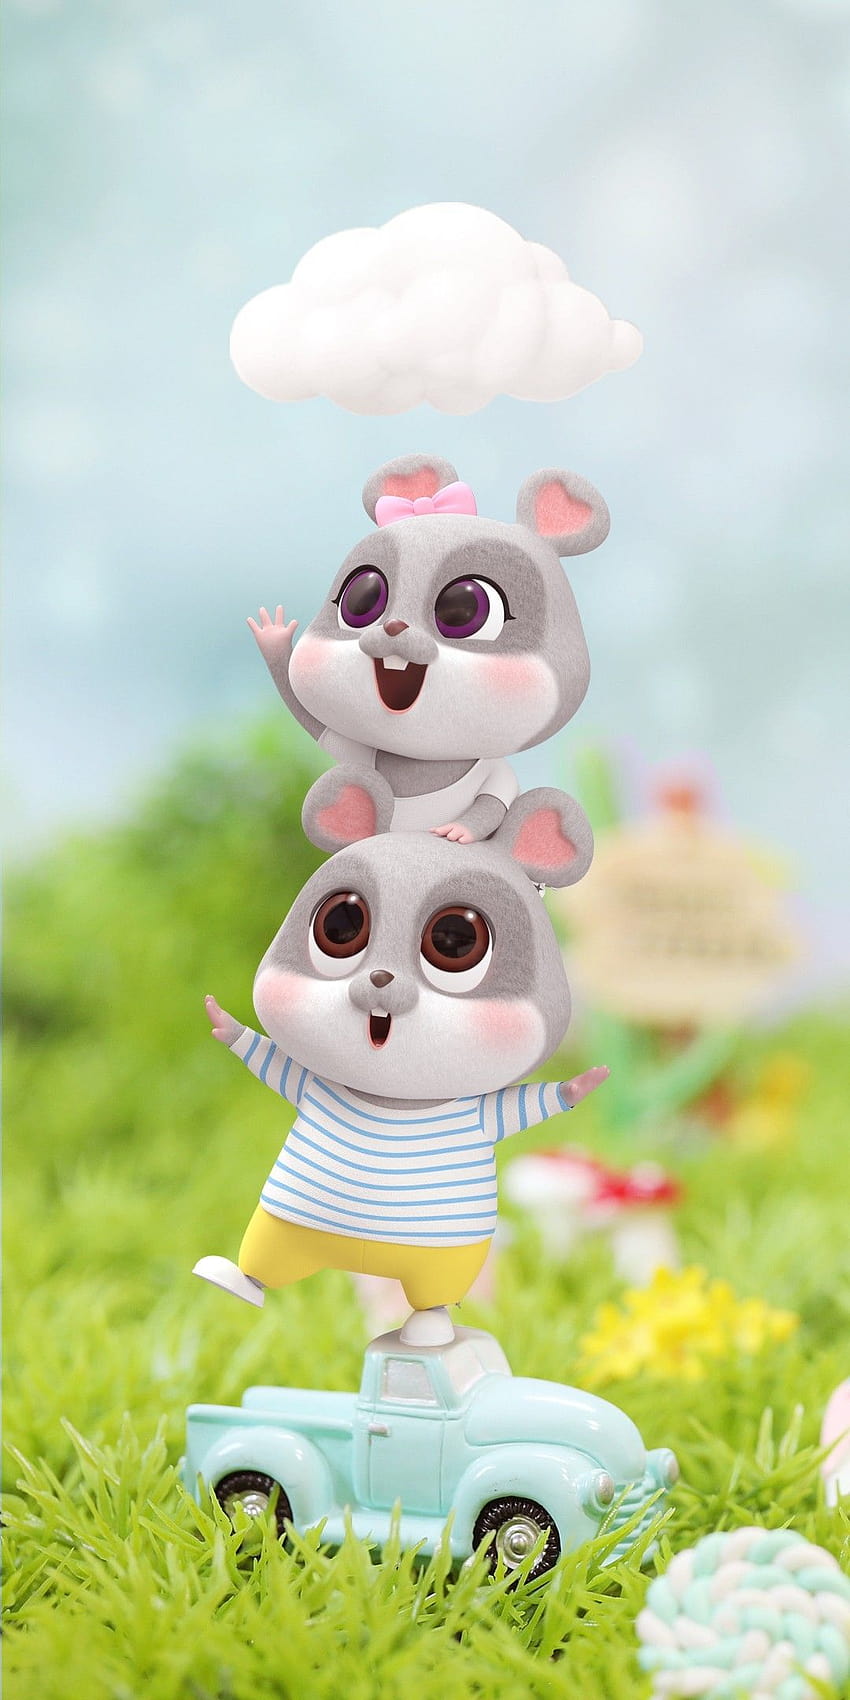 Nếu bạn là fan hâm mộ của các chú chuột hoạt hình dễ thương, hãy thưởng thức bộ sưu tập hình nền Cartoon mice này. Chúng sẽ mang lại cho bạn cảm giác ấm áp và đầy niềm vui.